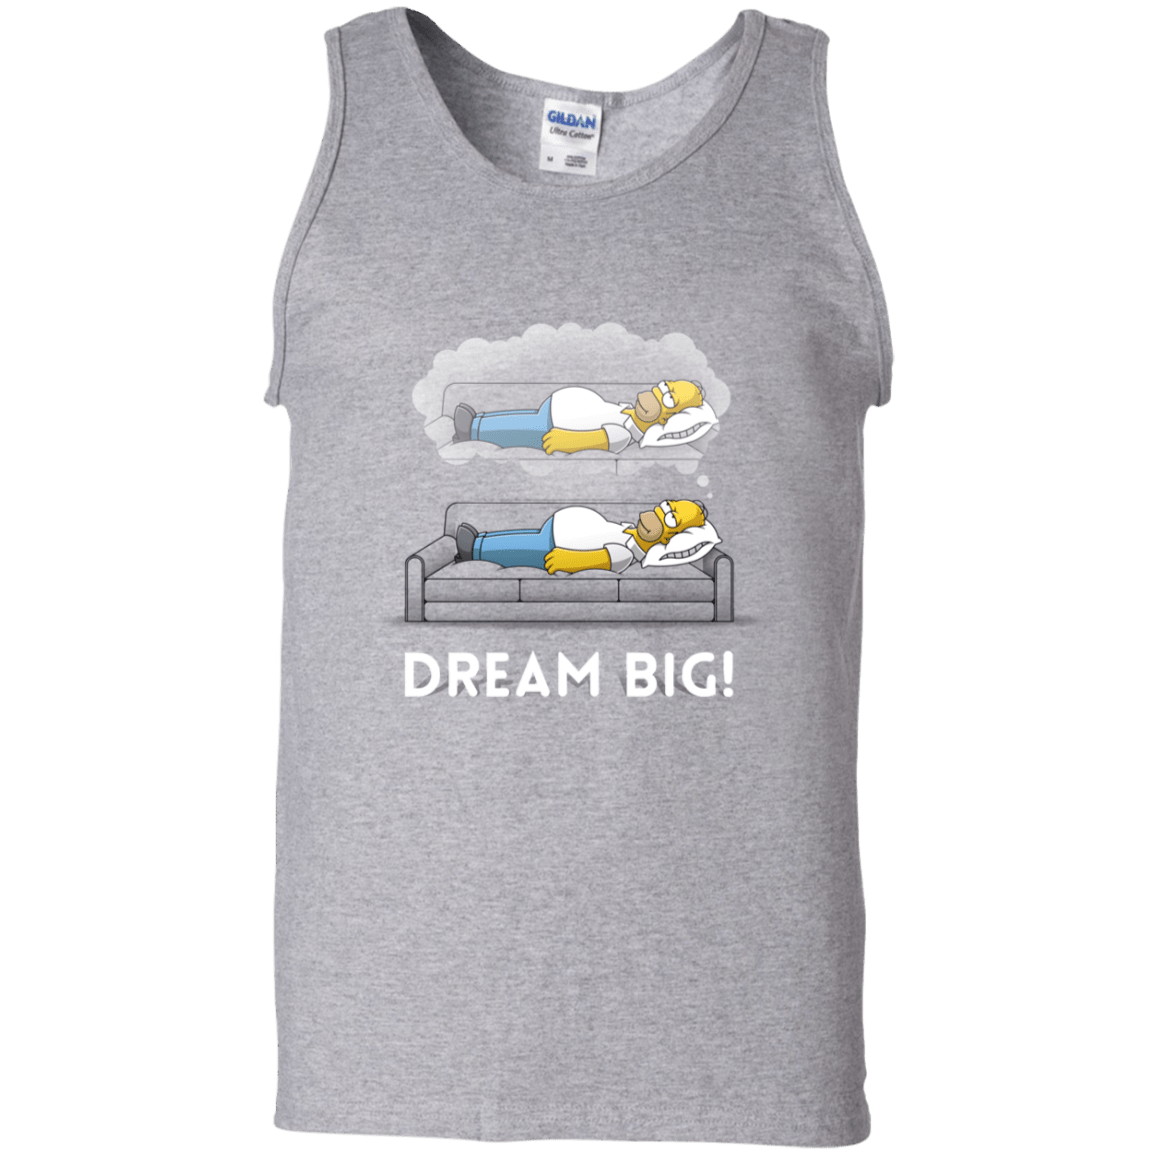 T-Shirts Sport Grey / S Dream Big! Men's Tank Top